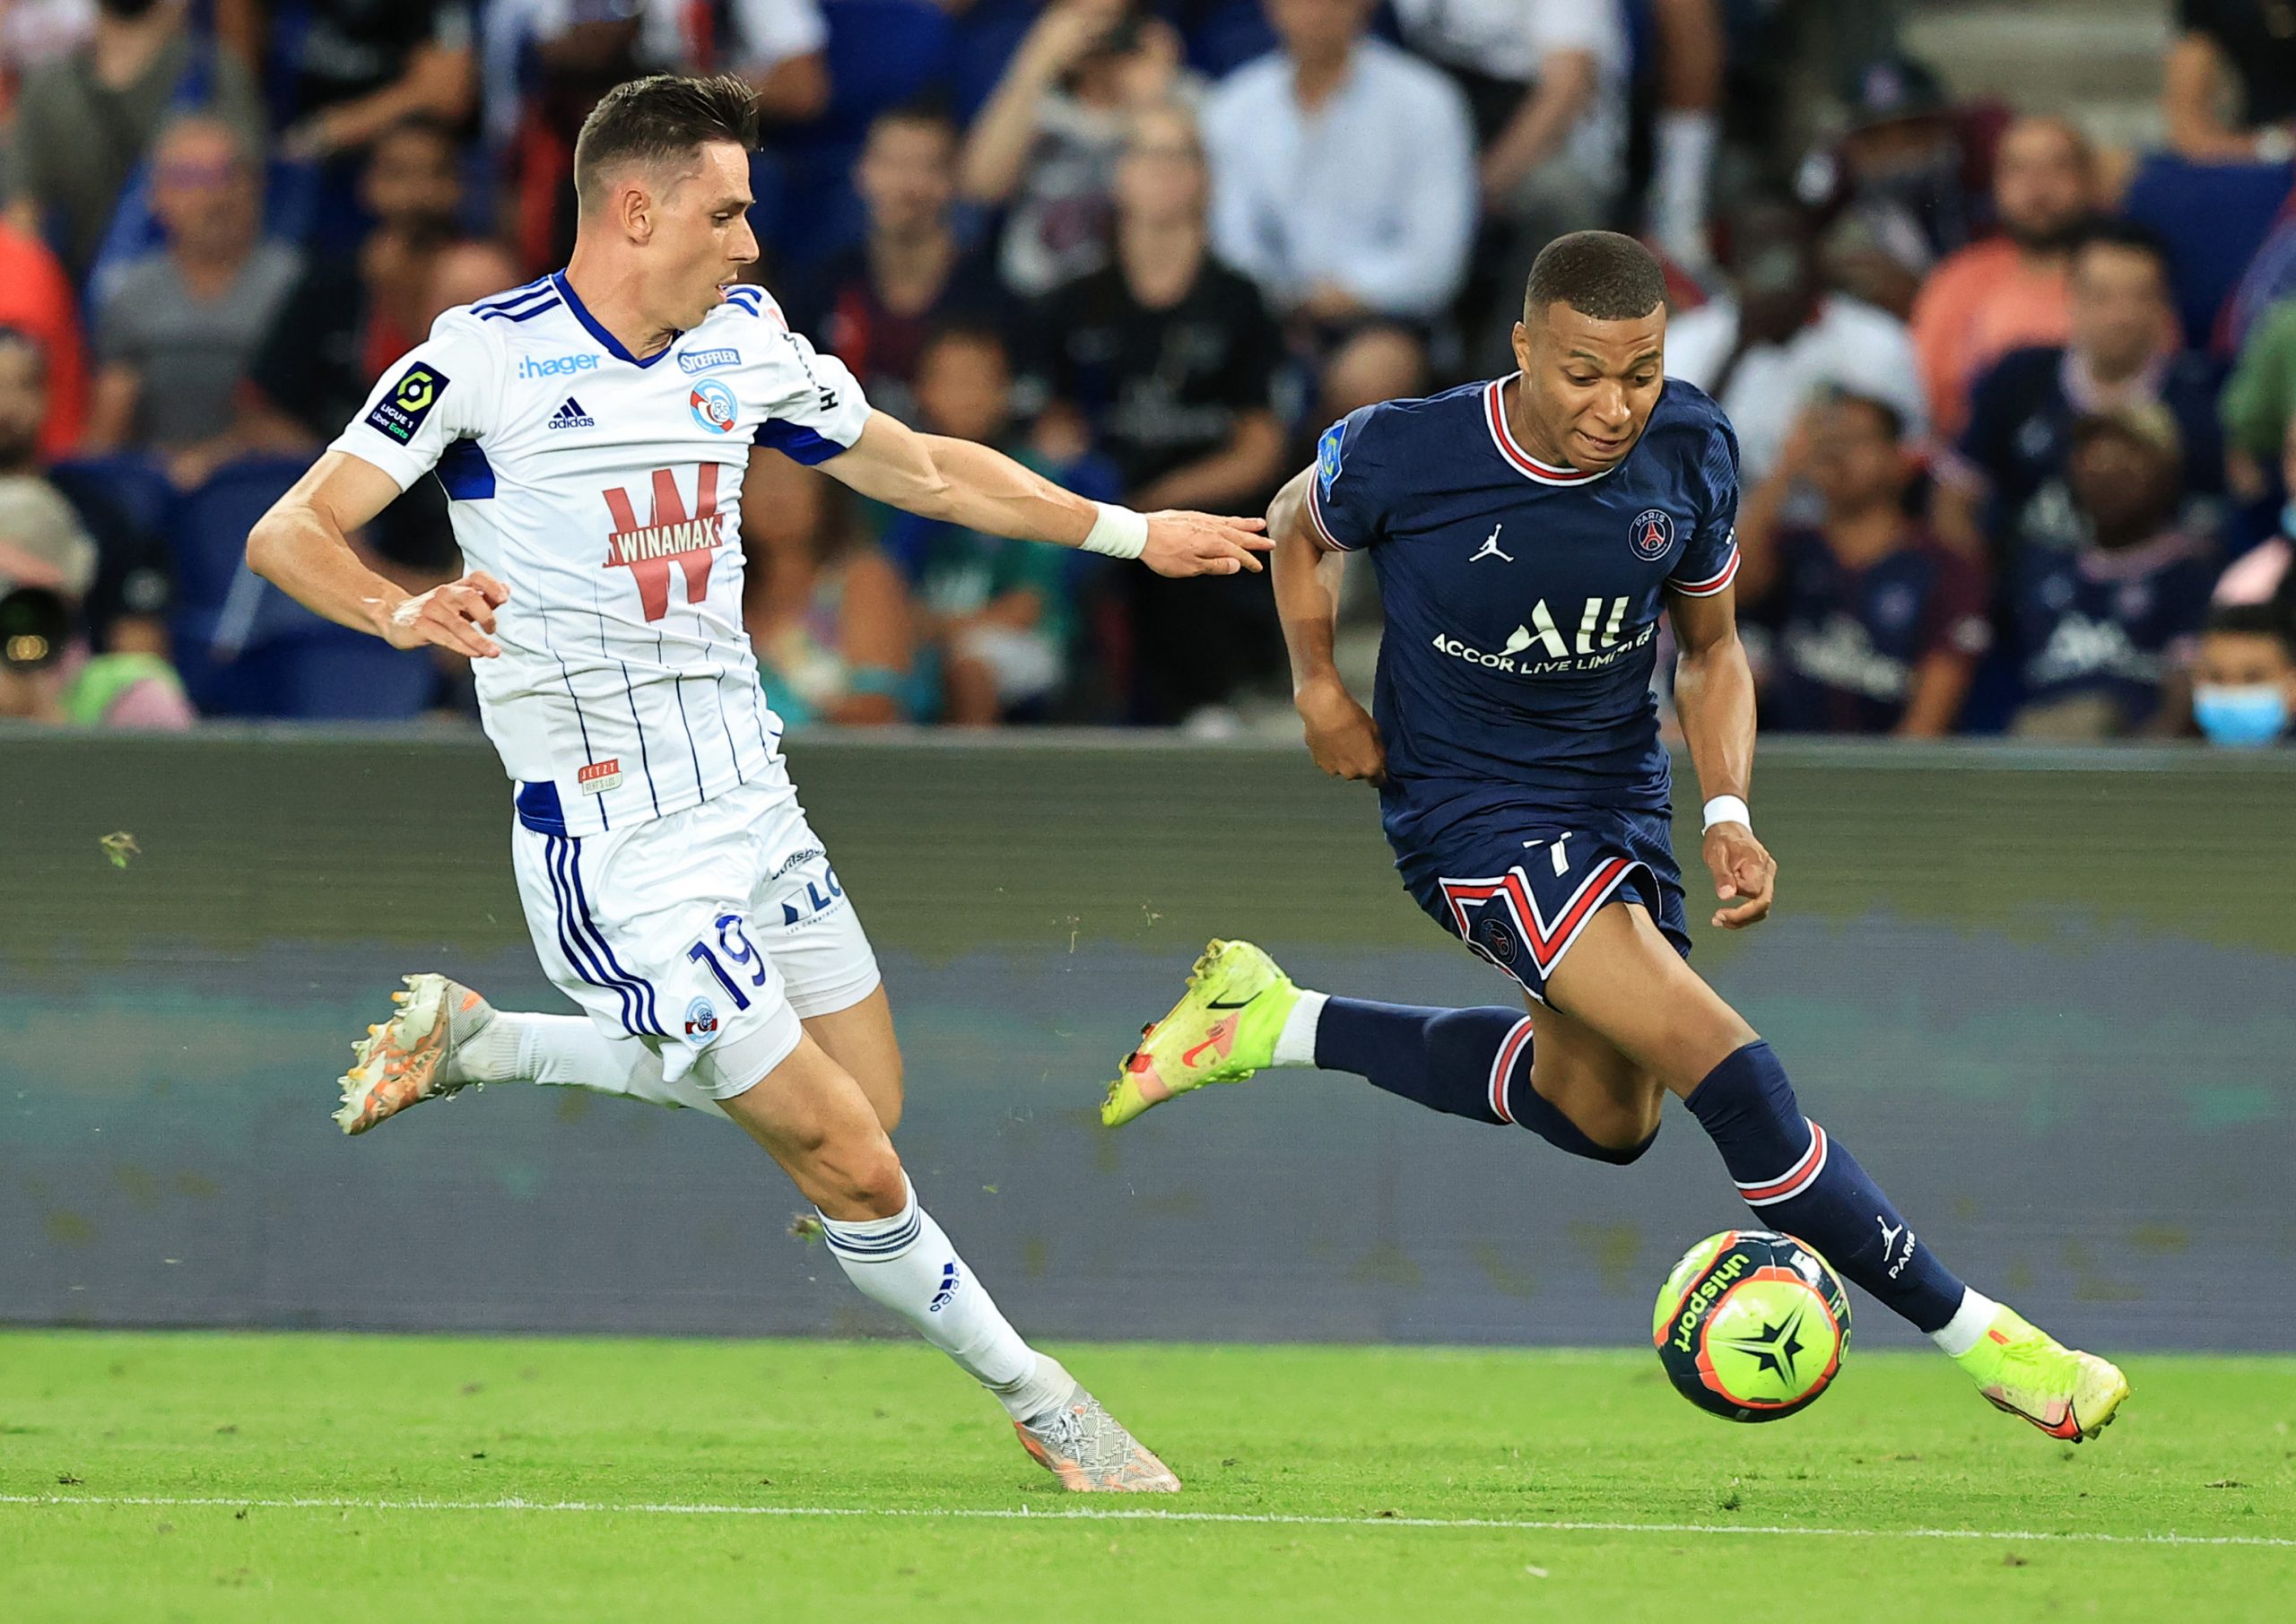 (Vòng 27 Ligue 1) FC Nantes - Montpellier: Tin tức trước trận, dự đoán trận đấu